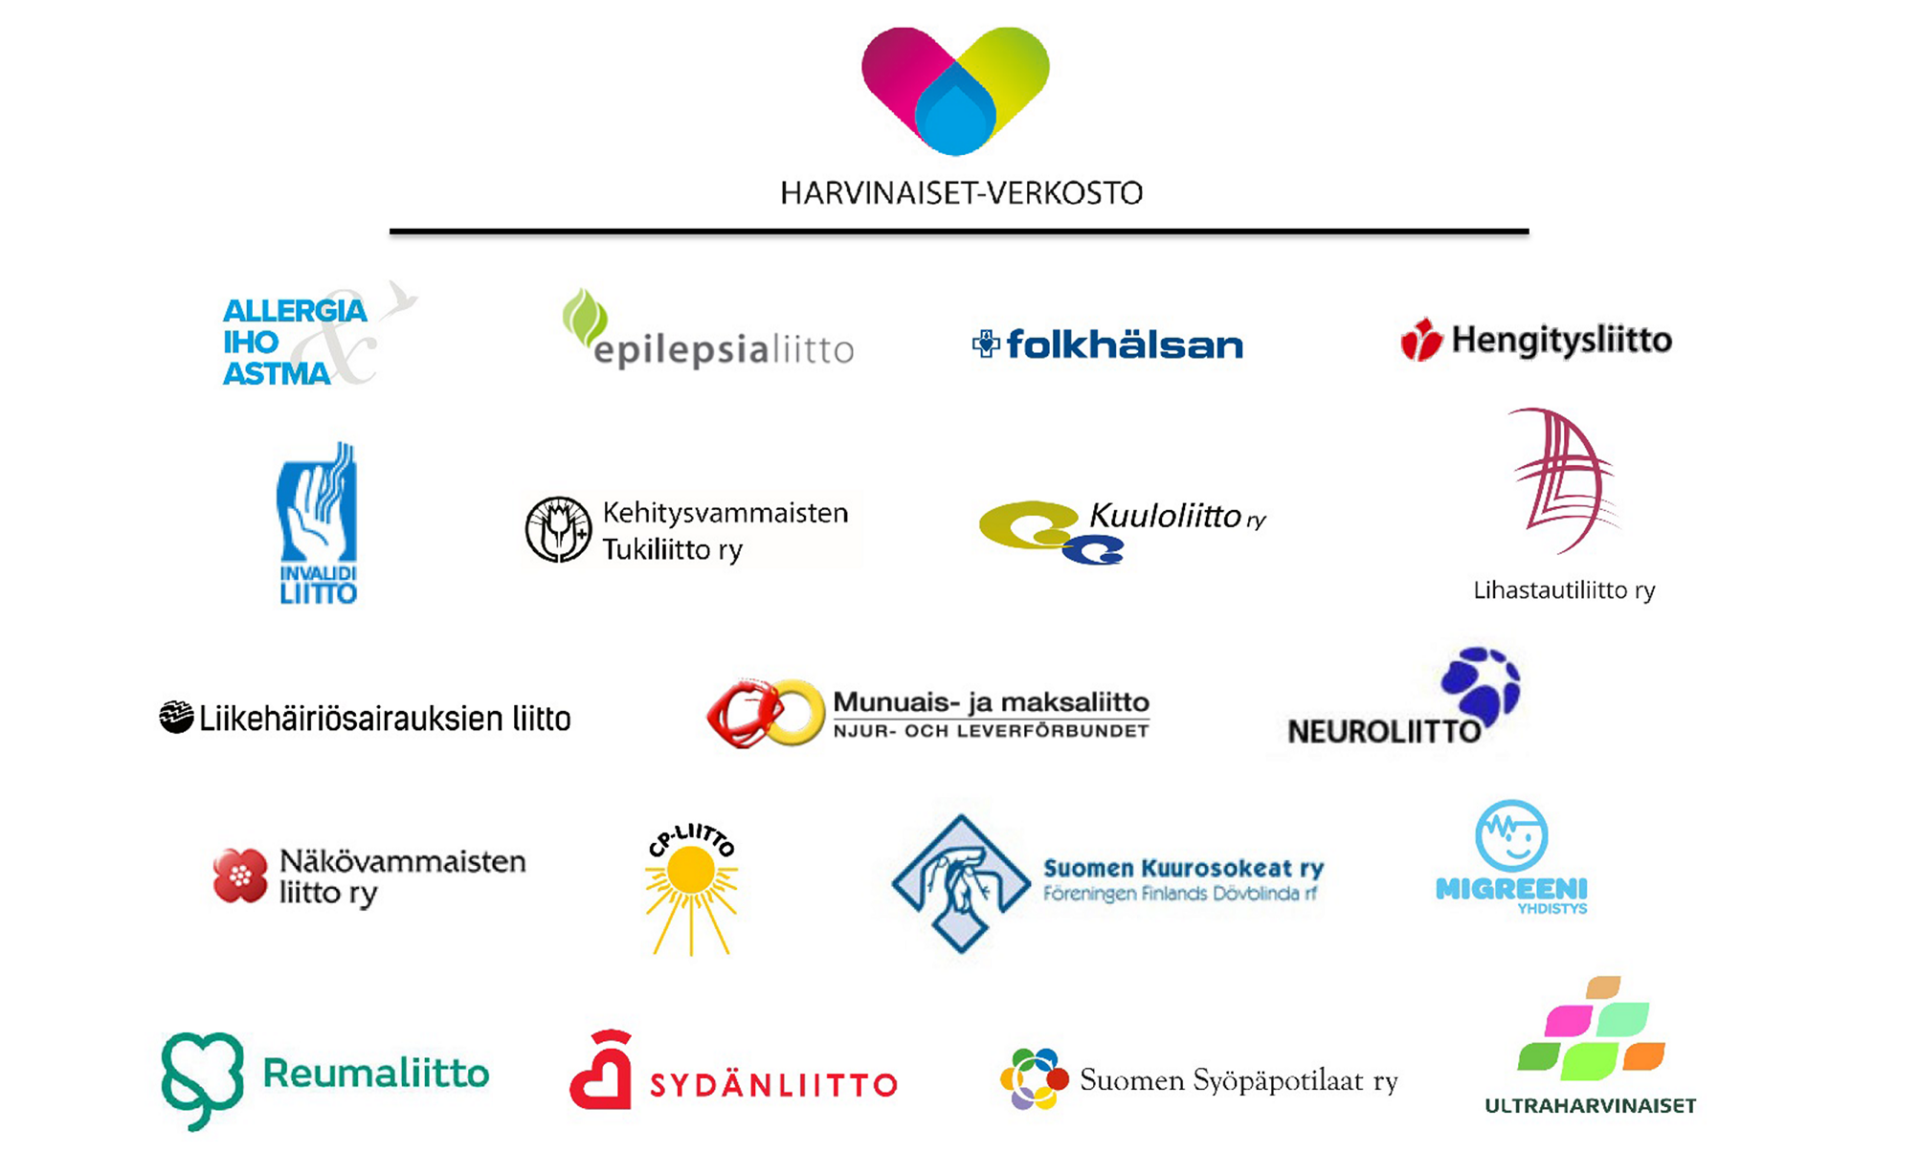 Harviniaset-verkoston 19 jäsenjärjestöä